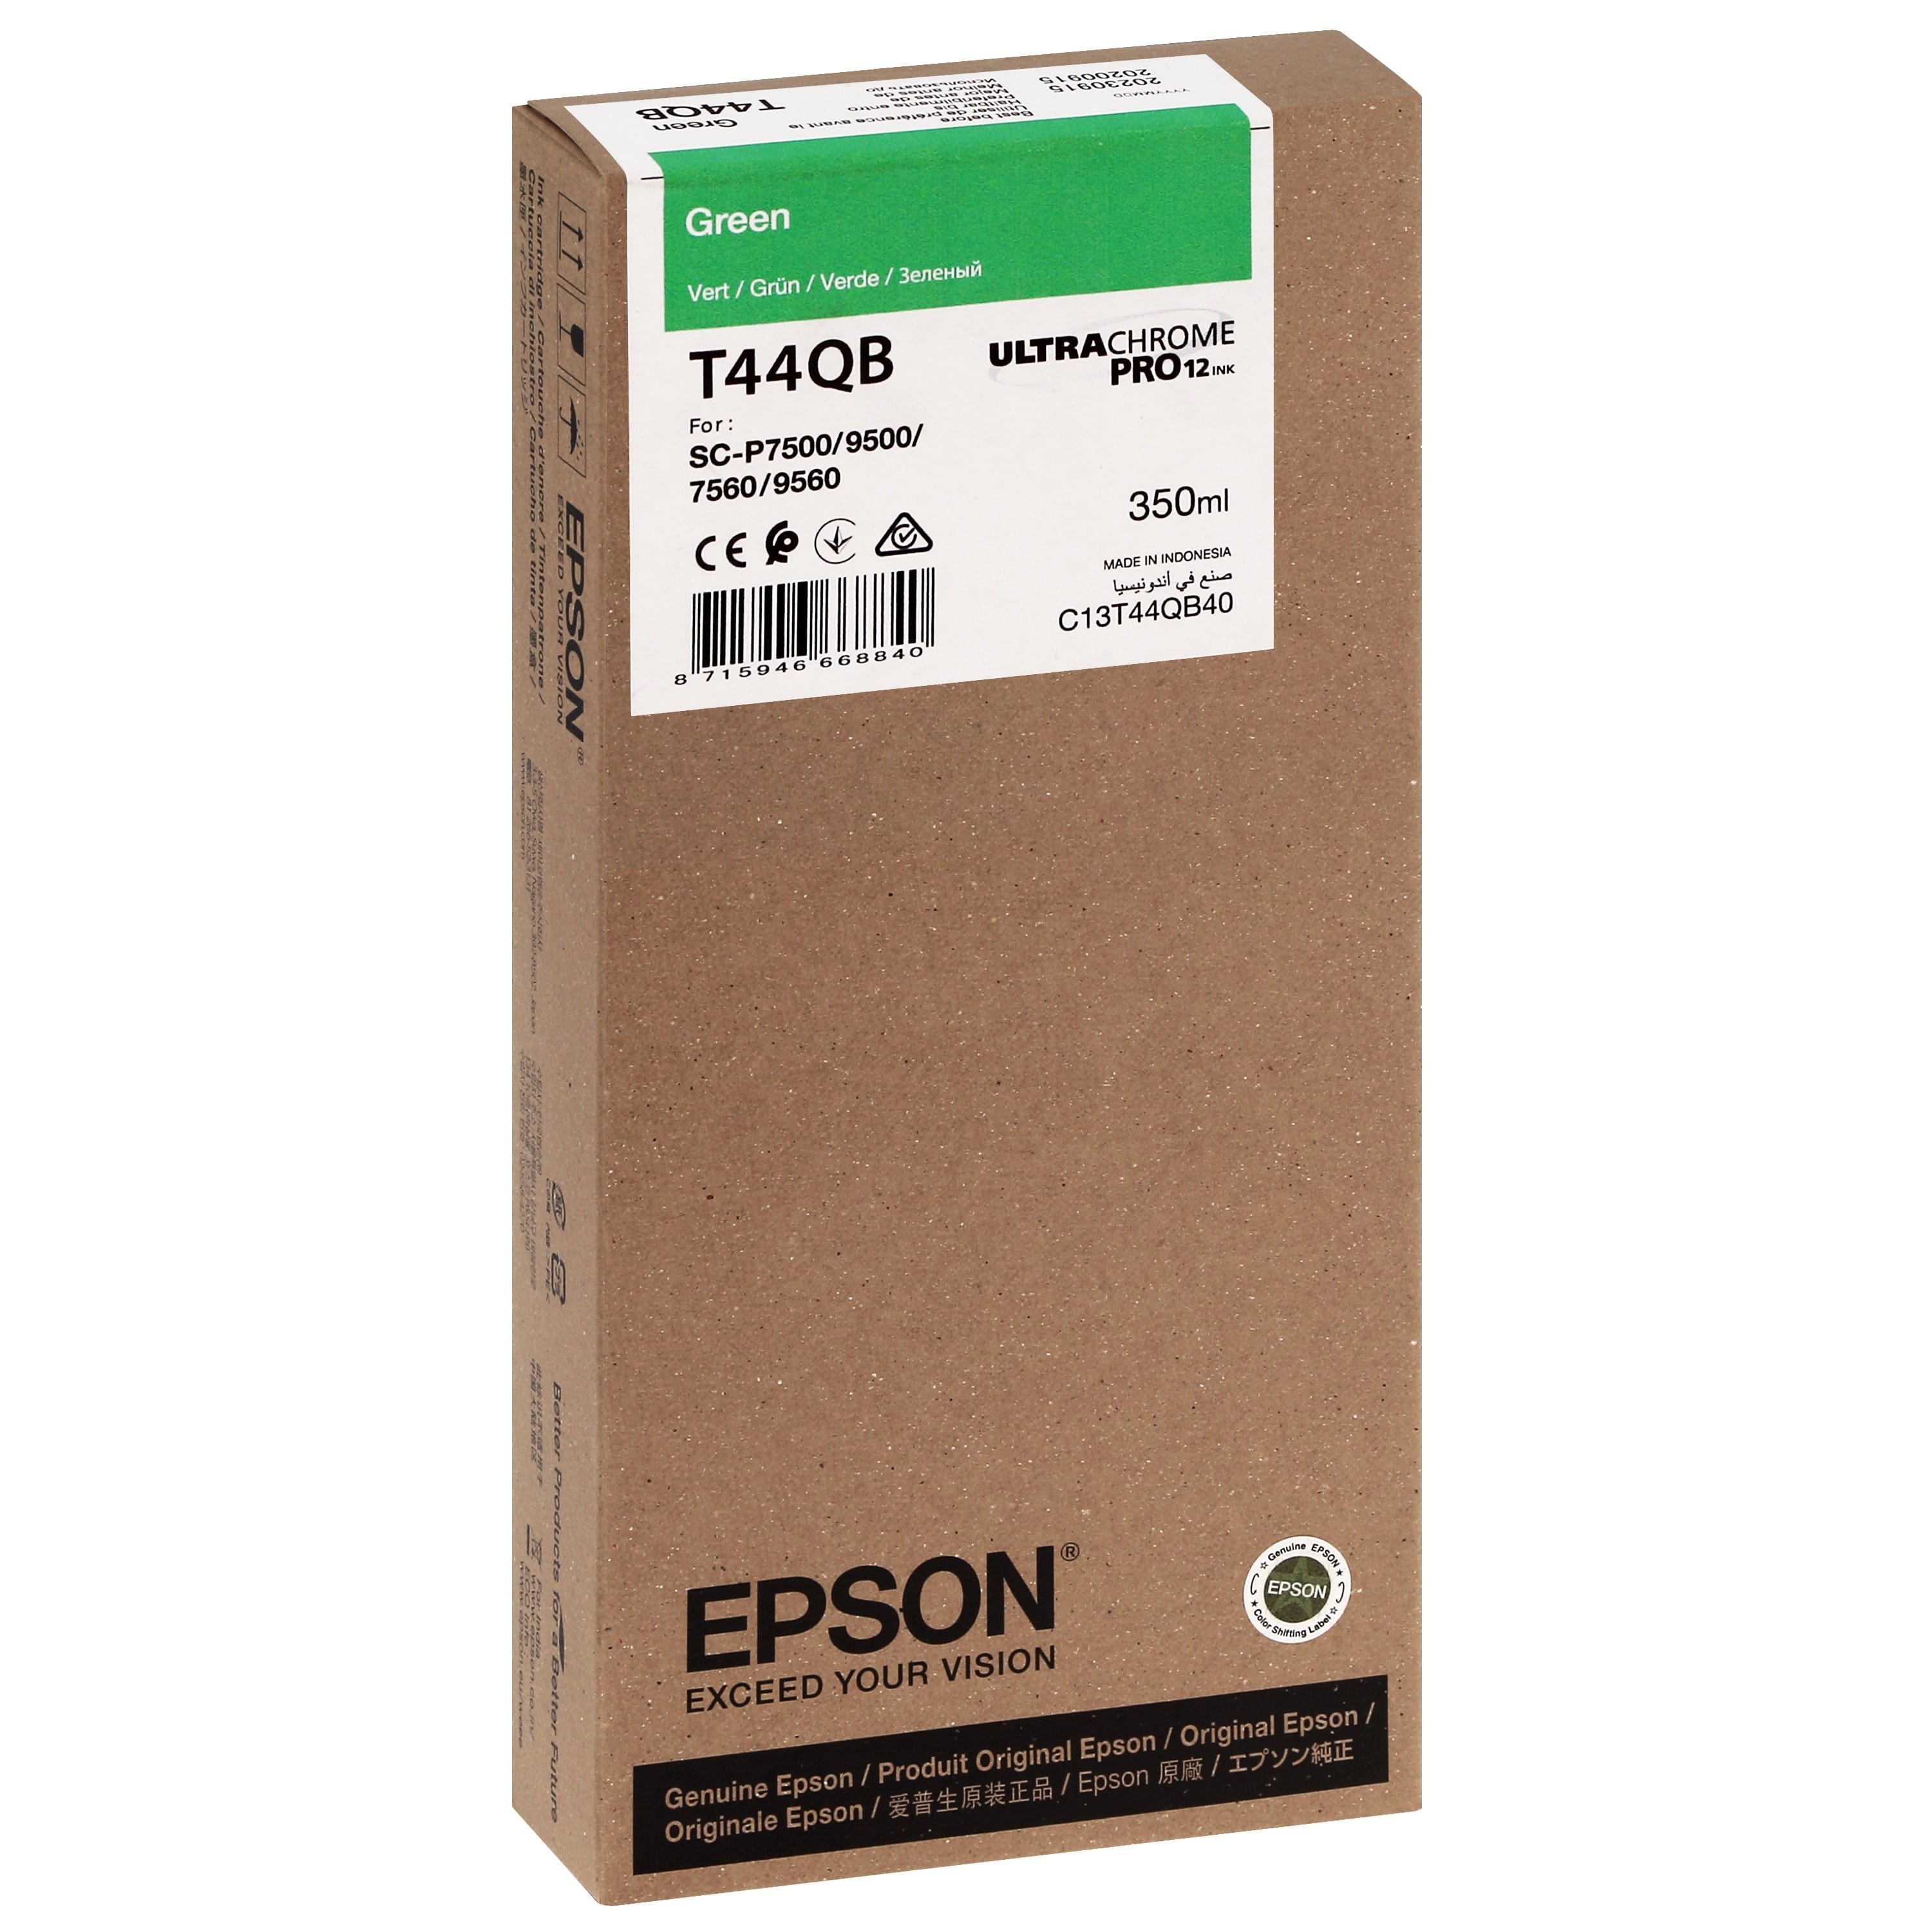 EPSON - Cartouche d'encre traceur T44QB Pour imprimante SC-P7500/9500 UltraChrome PRO Vert - 350ml